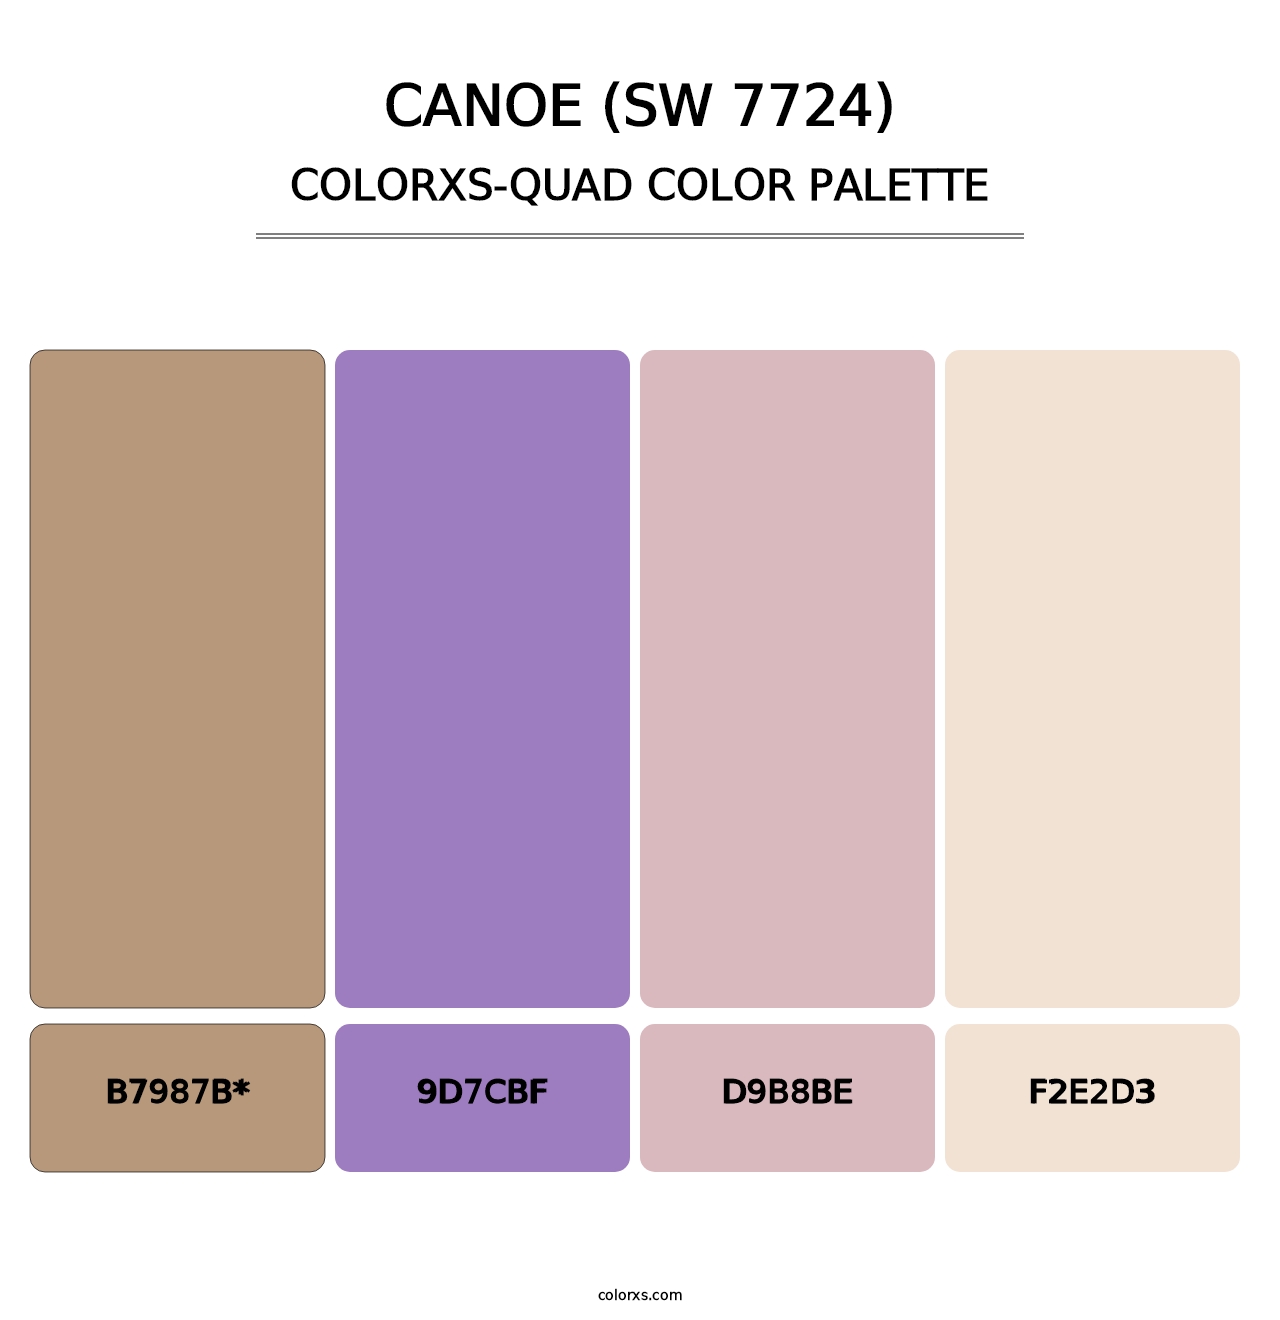 Canoe (SW 7724) - Colorxs Quad Palette